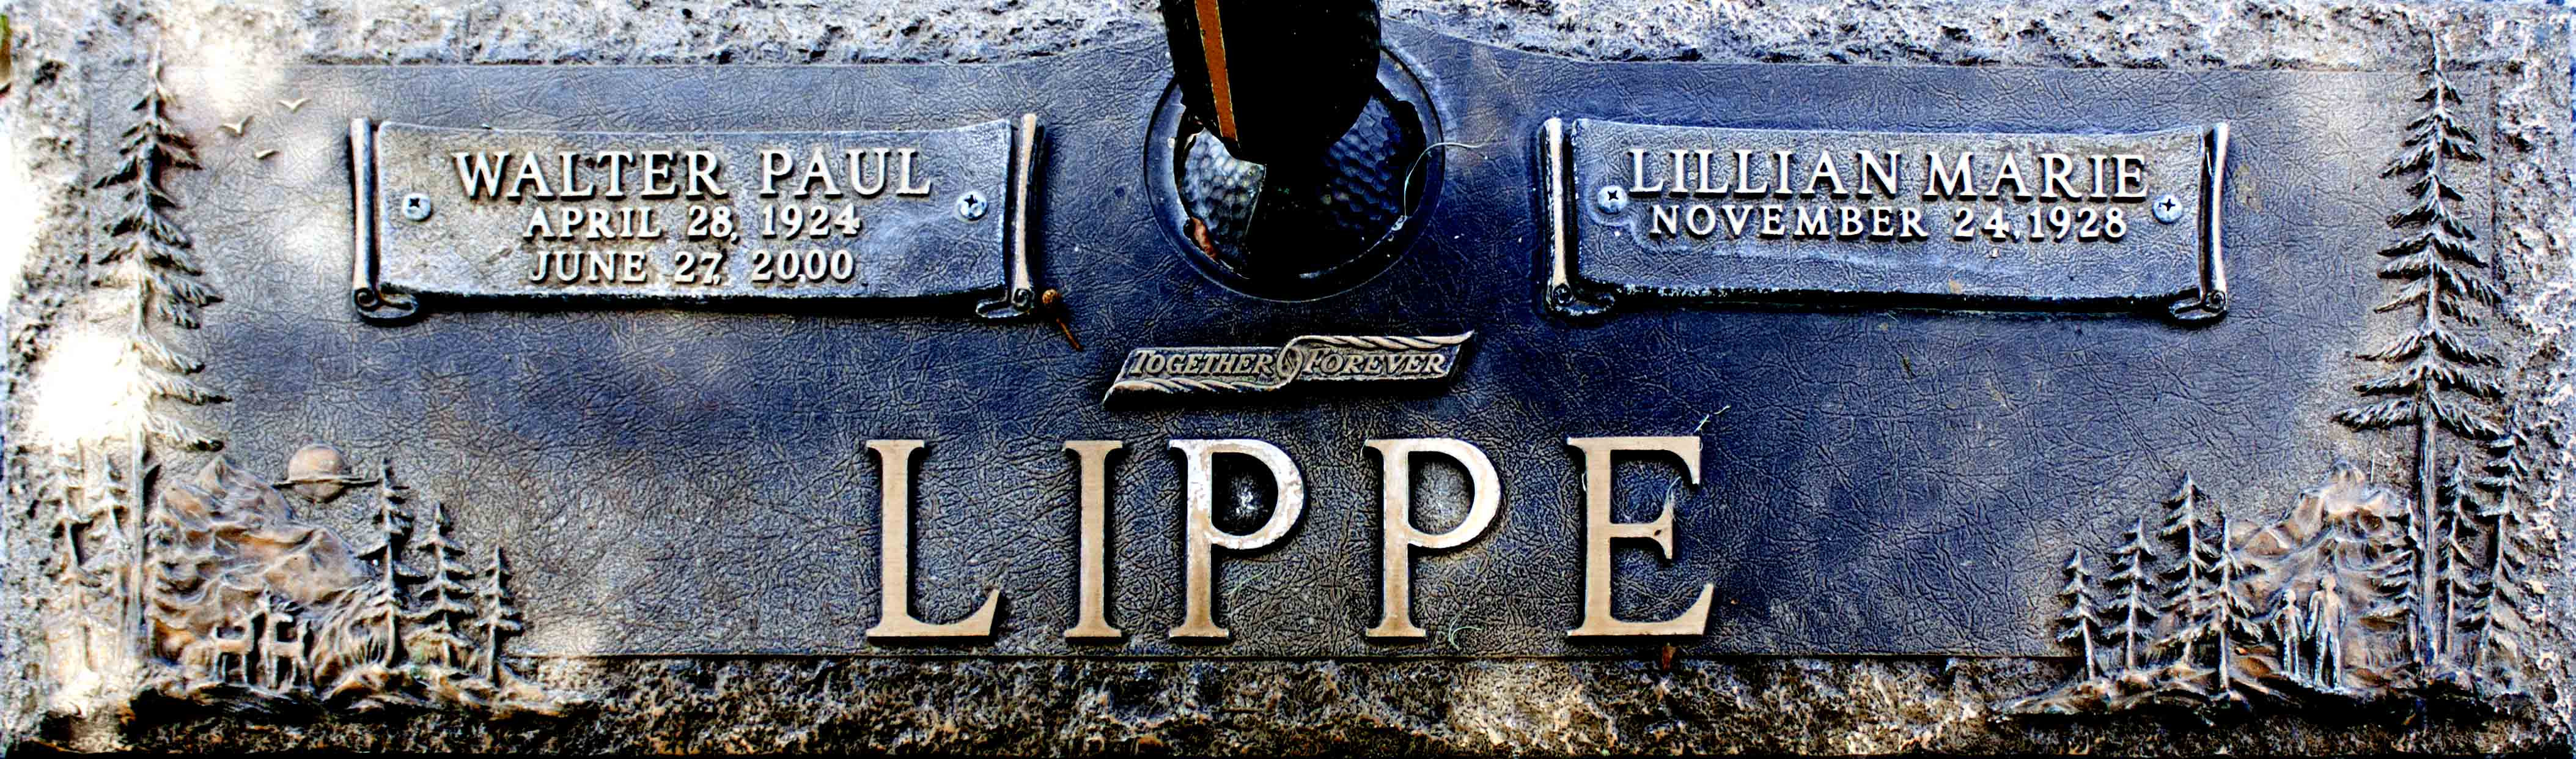 Walter Paul Lippe Gravesite